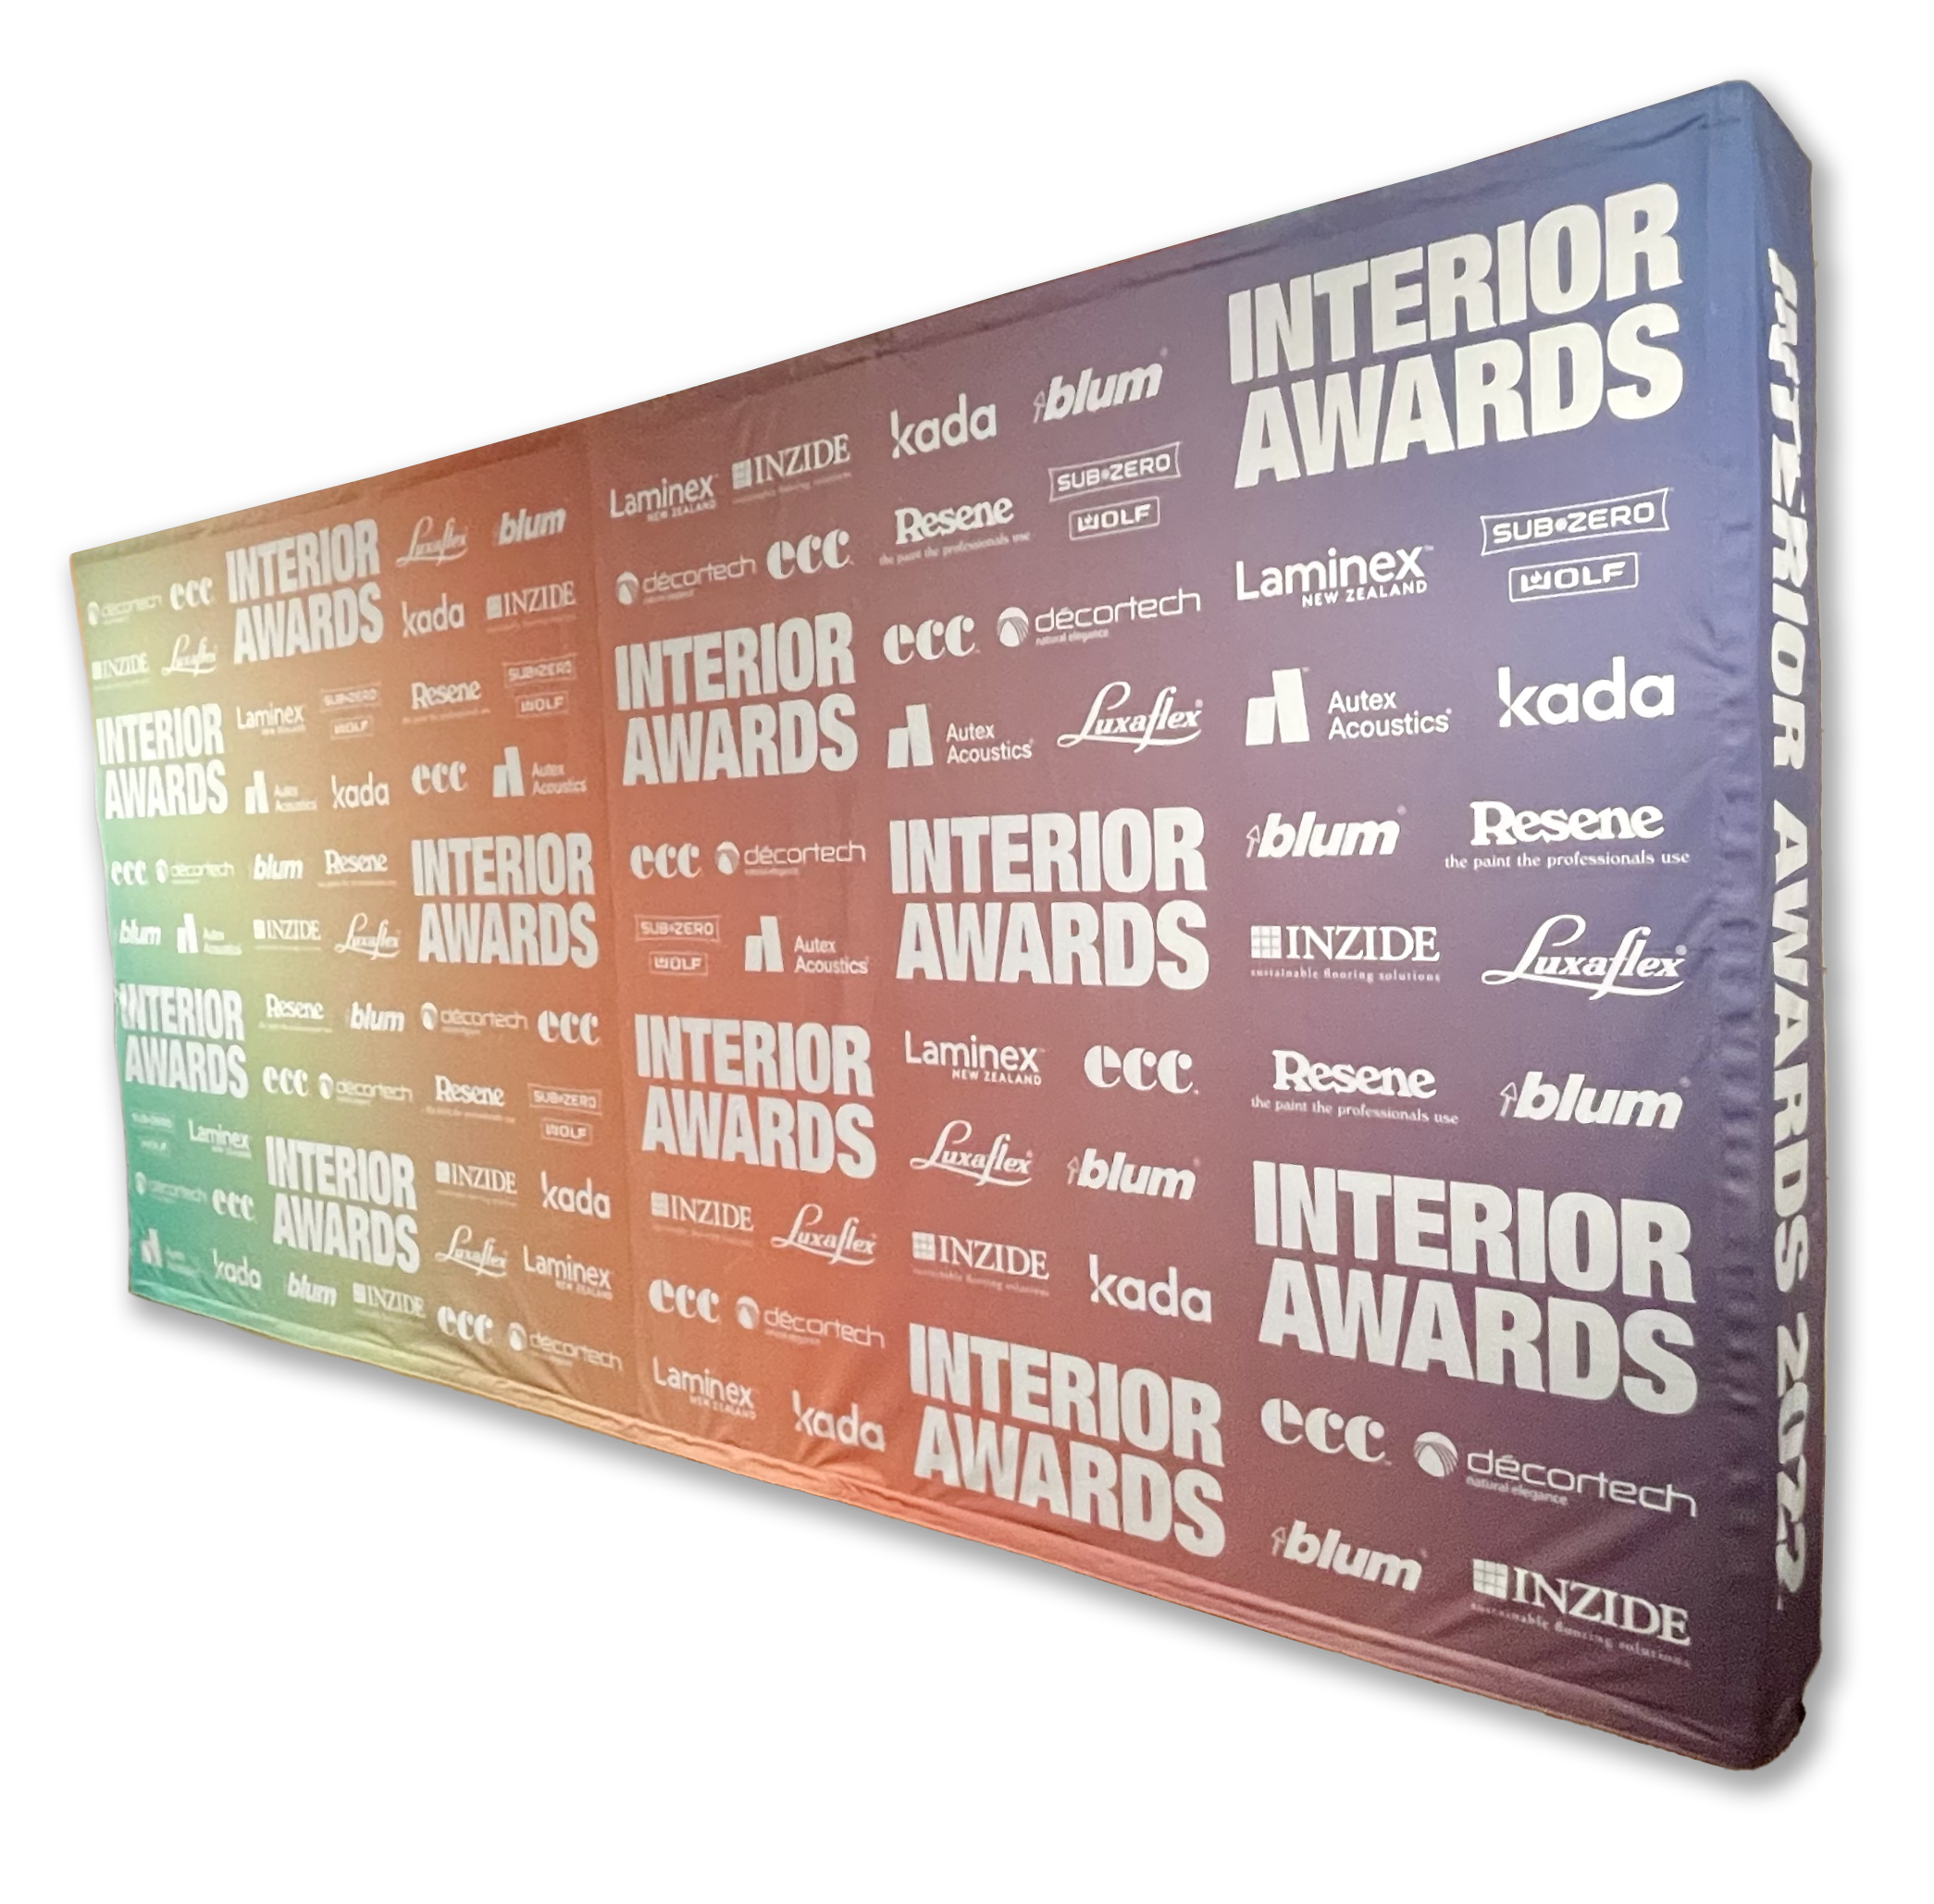 Interior Awards Media Wall